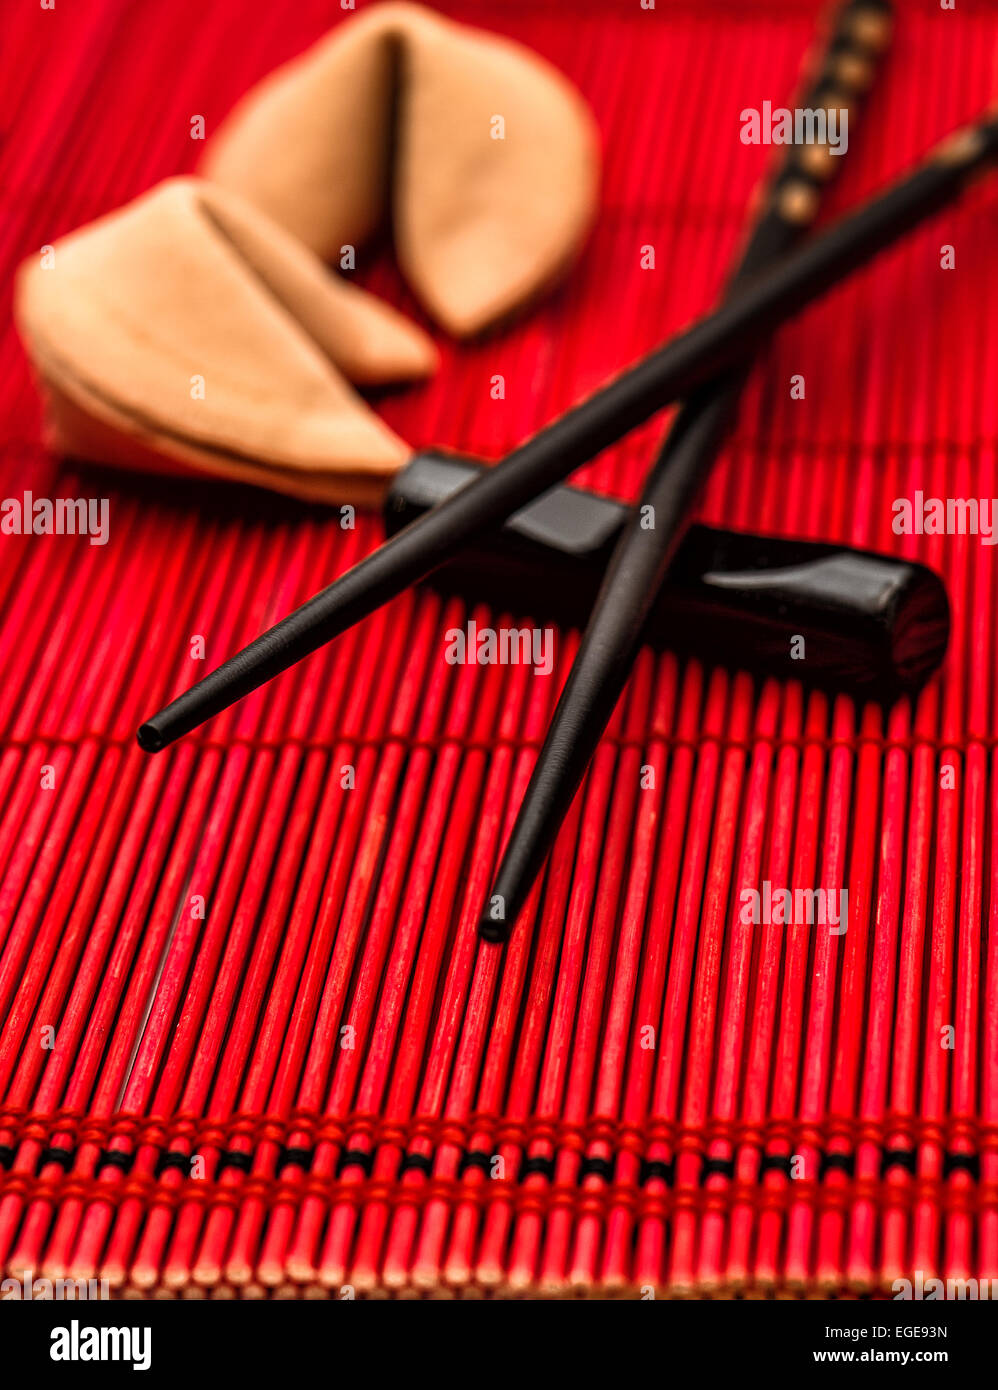 Table de style asiatique avec réglage fortune cookies et Baguettes en bambou noir sur rouge mat. Concept du nouvel an chinois. Selective Banque D'Images